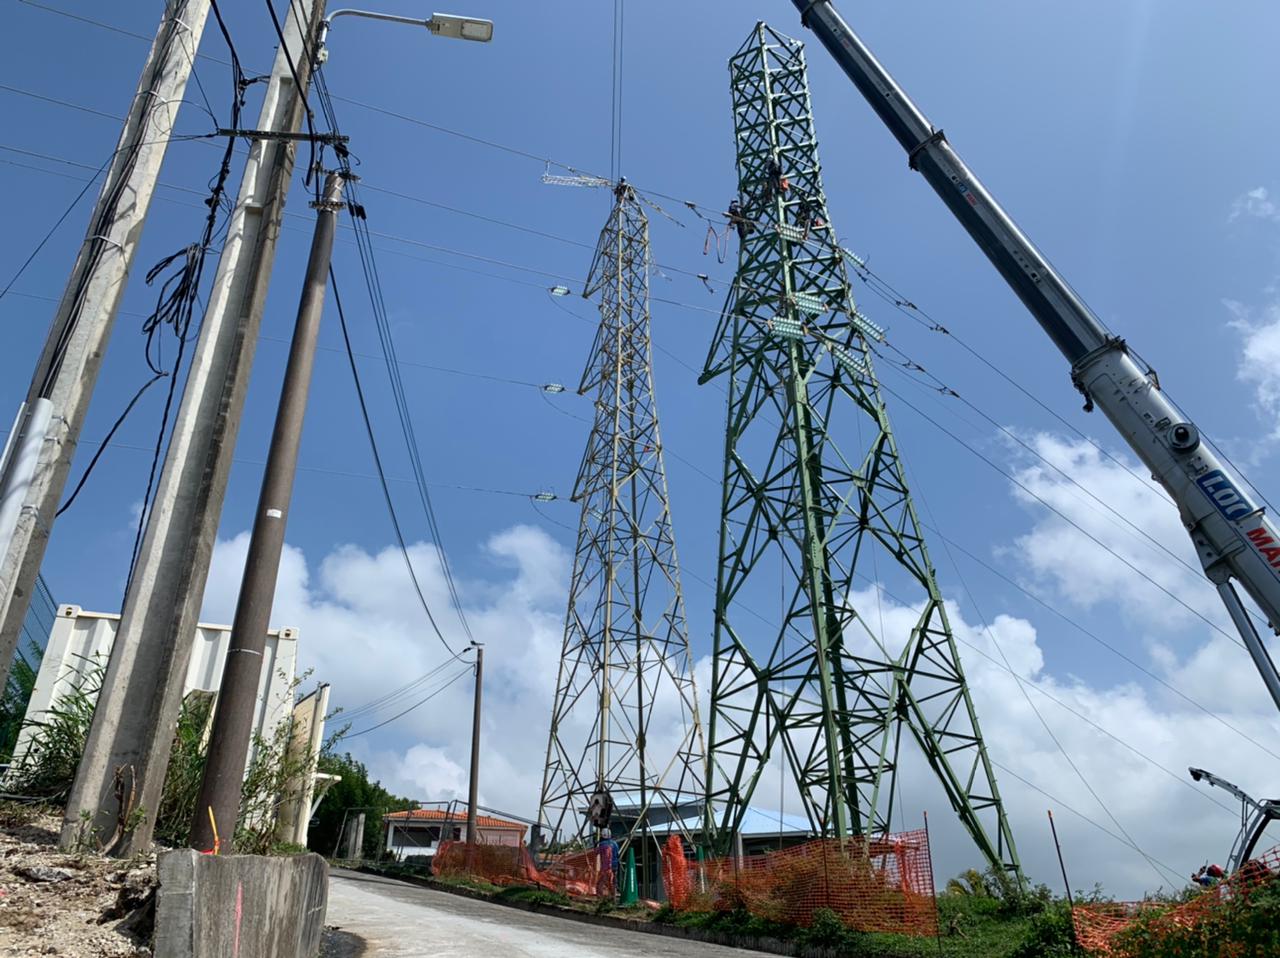     EDF Martinique procède au renforcement de son réseau haute-tension

